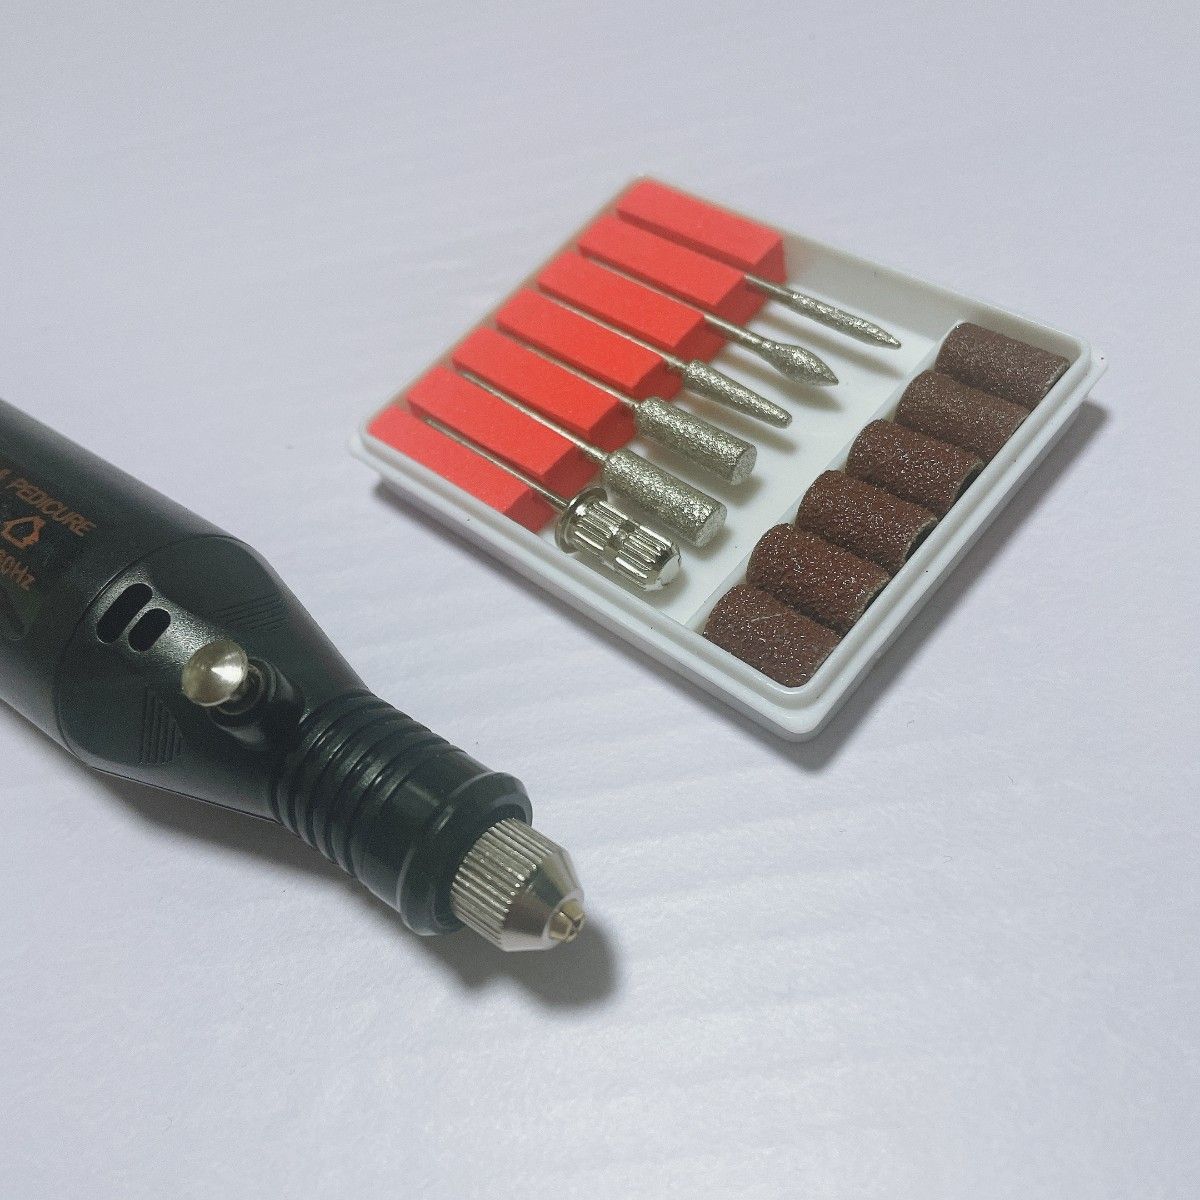 USB ミニ ペン ルーター リューター ダイヤモンド ビット 研磨 彫刻 電動 工具 ネイルケア ブラック